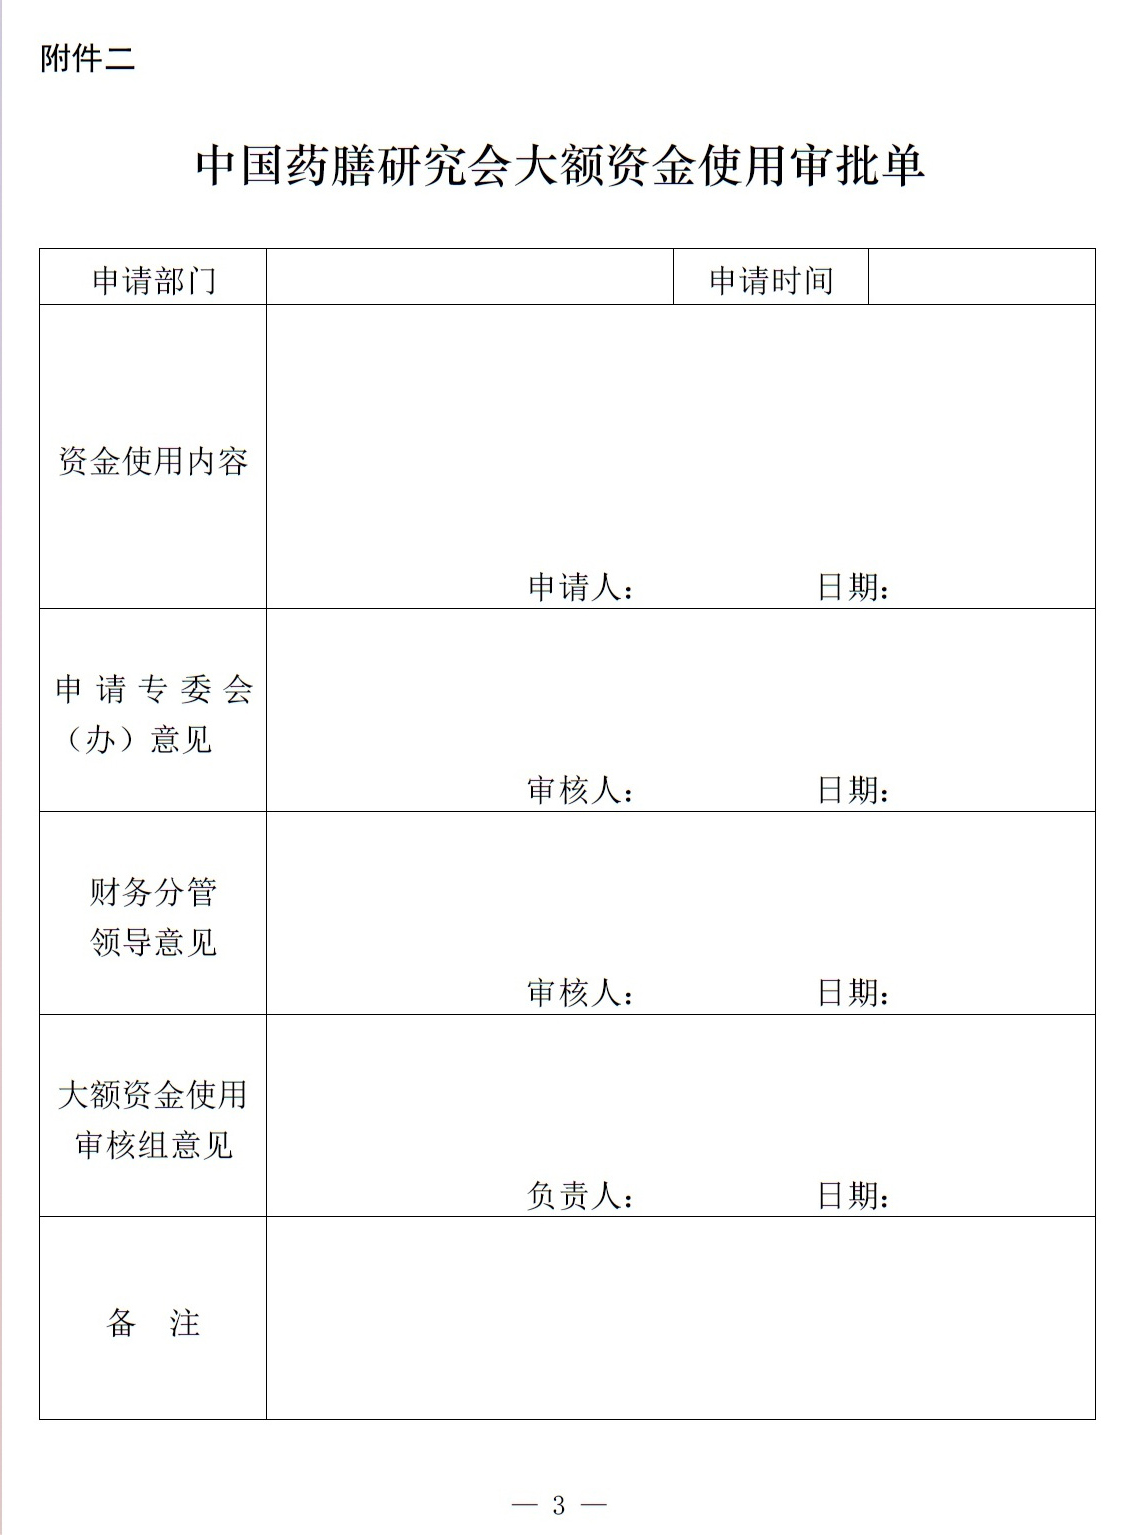 21 中国药膳研究会大额资金使用管理办法（试行）5（230326通过）.jpg